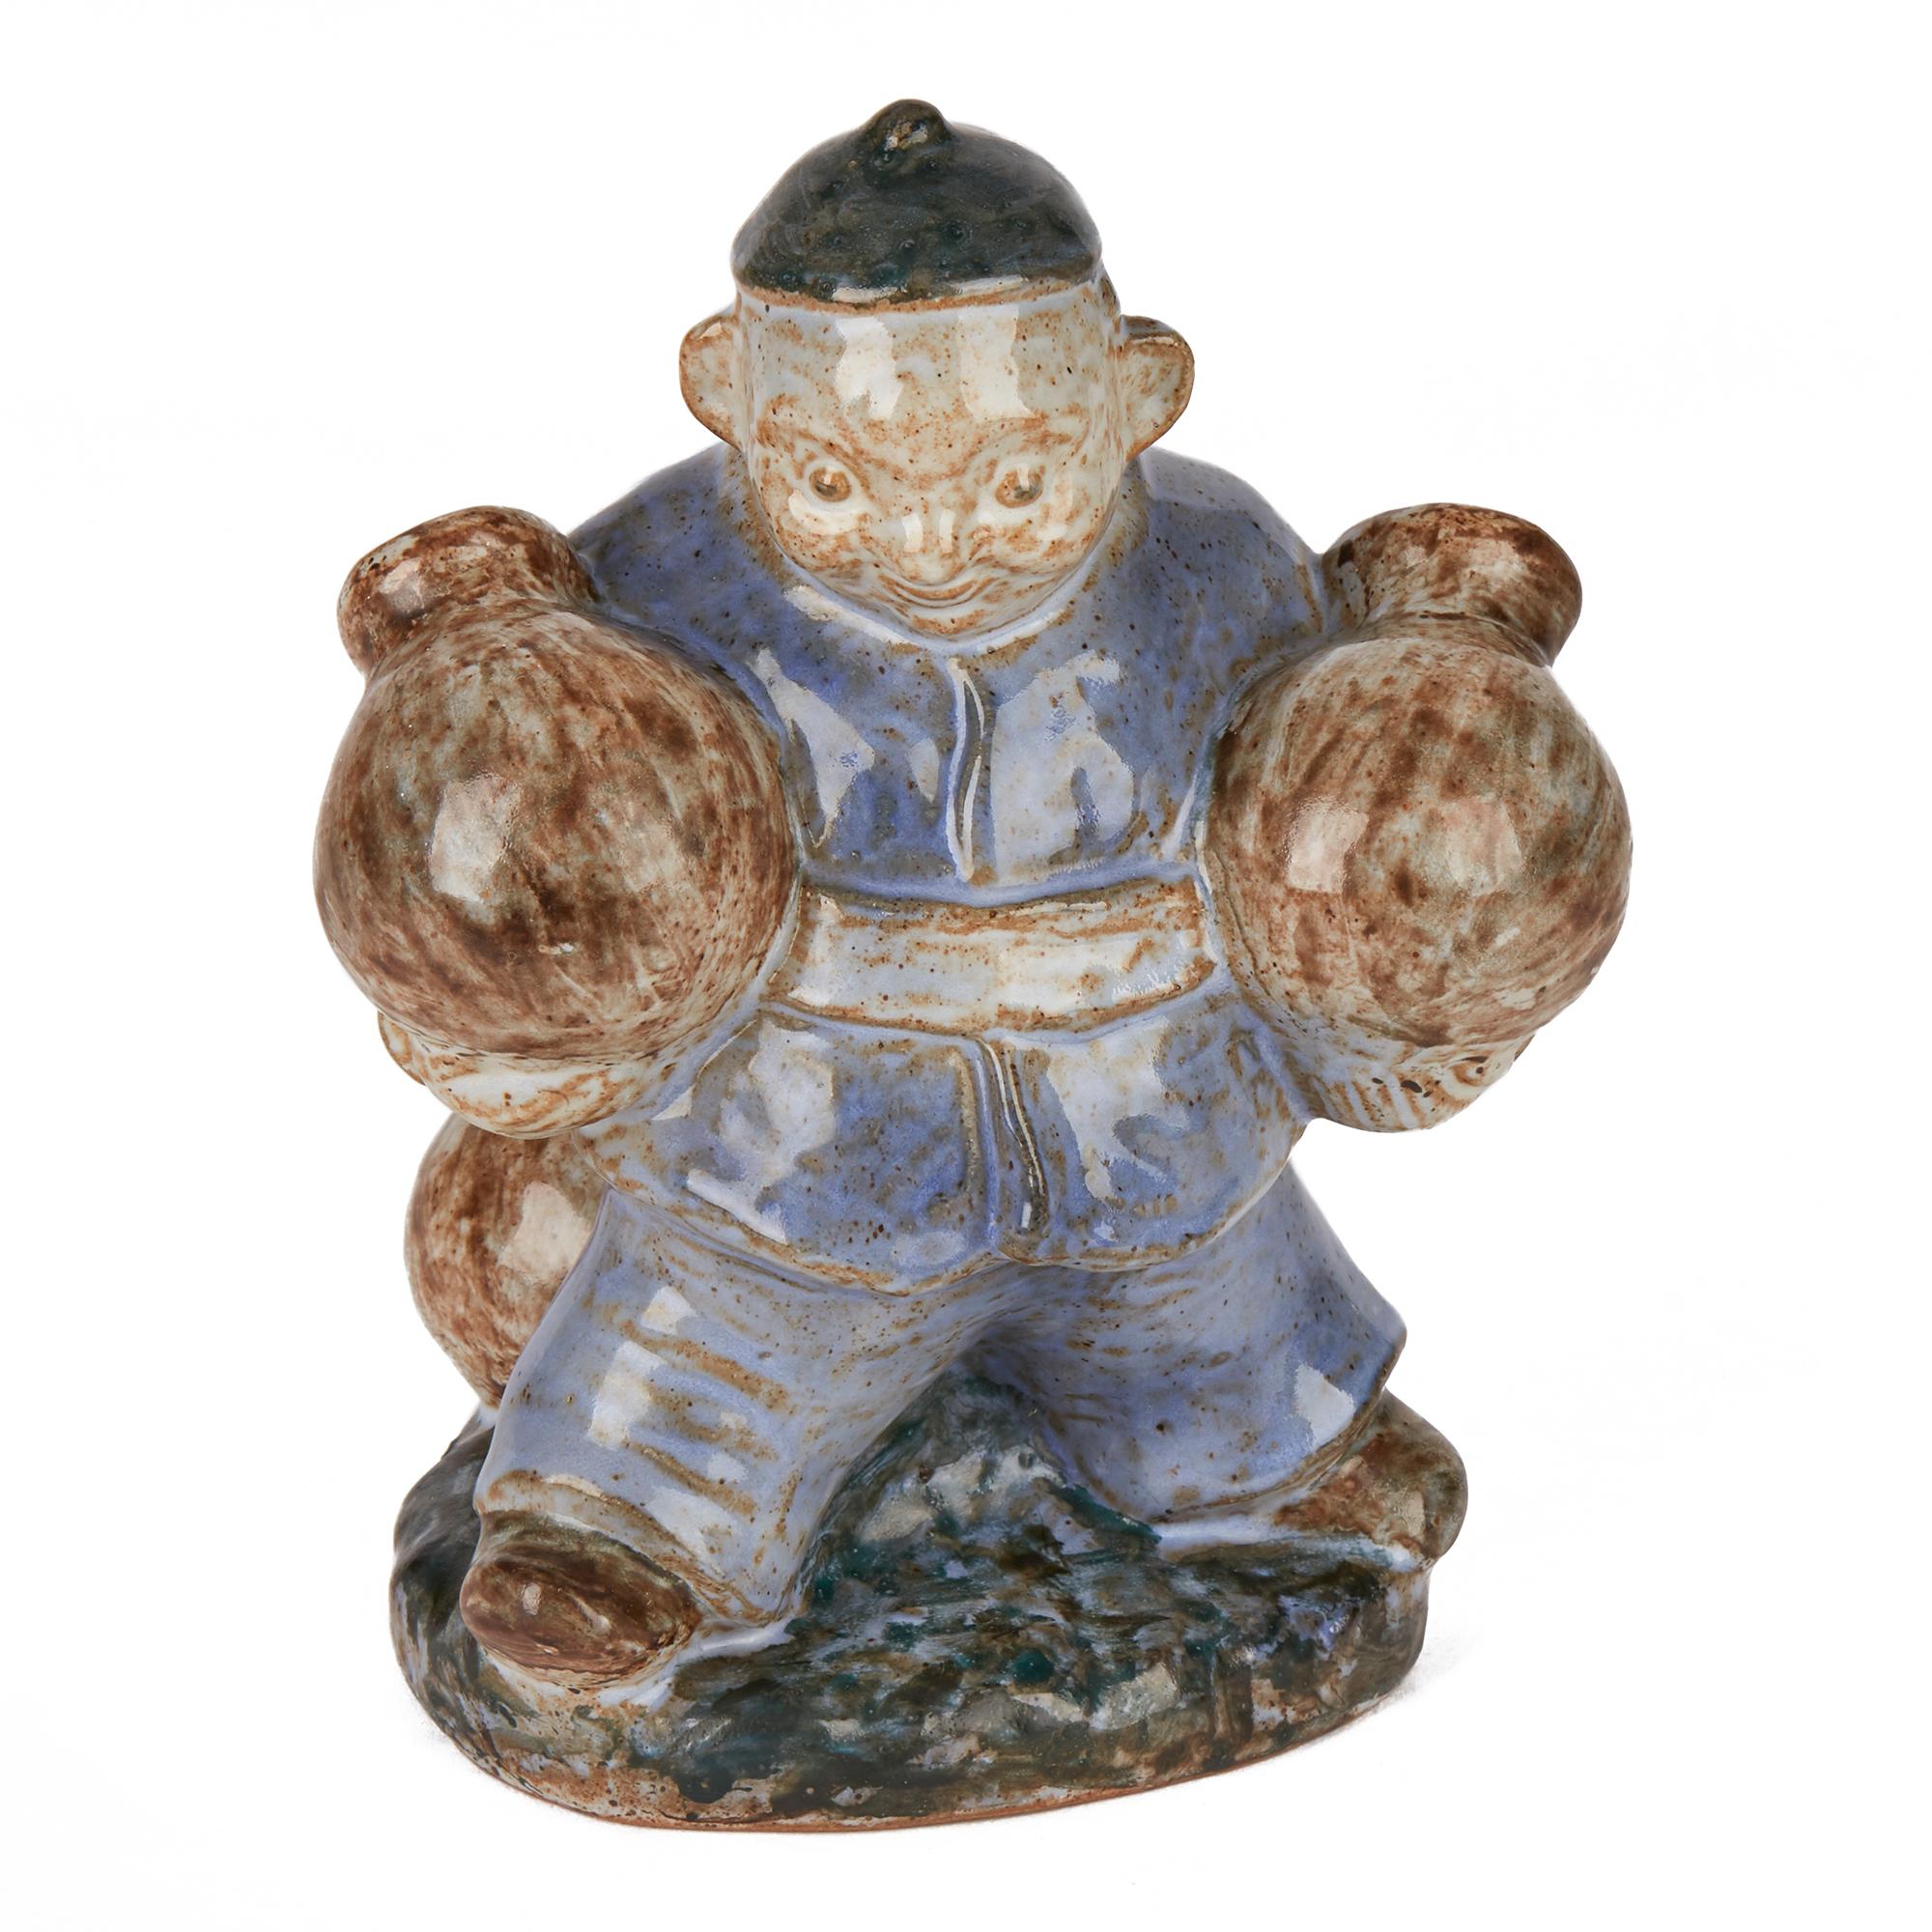 Eine stilvolle dänische Steingutskulptur aus der Mitte des Jahrhunderts, die eine asiatische Figur darstellt, die zwei große Keramikgefäße trägt, auf deren Sockel weitere Gefäße stehen. Die große Figur ist in Blau und Braun auf grauem Grund glasiert